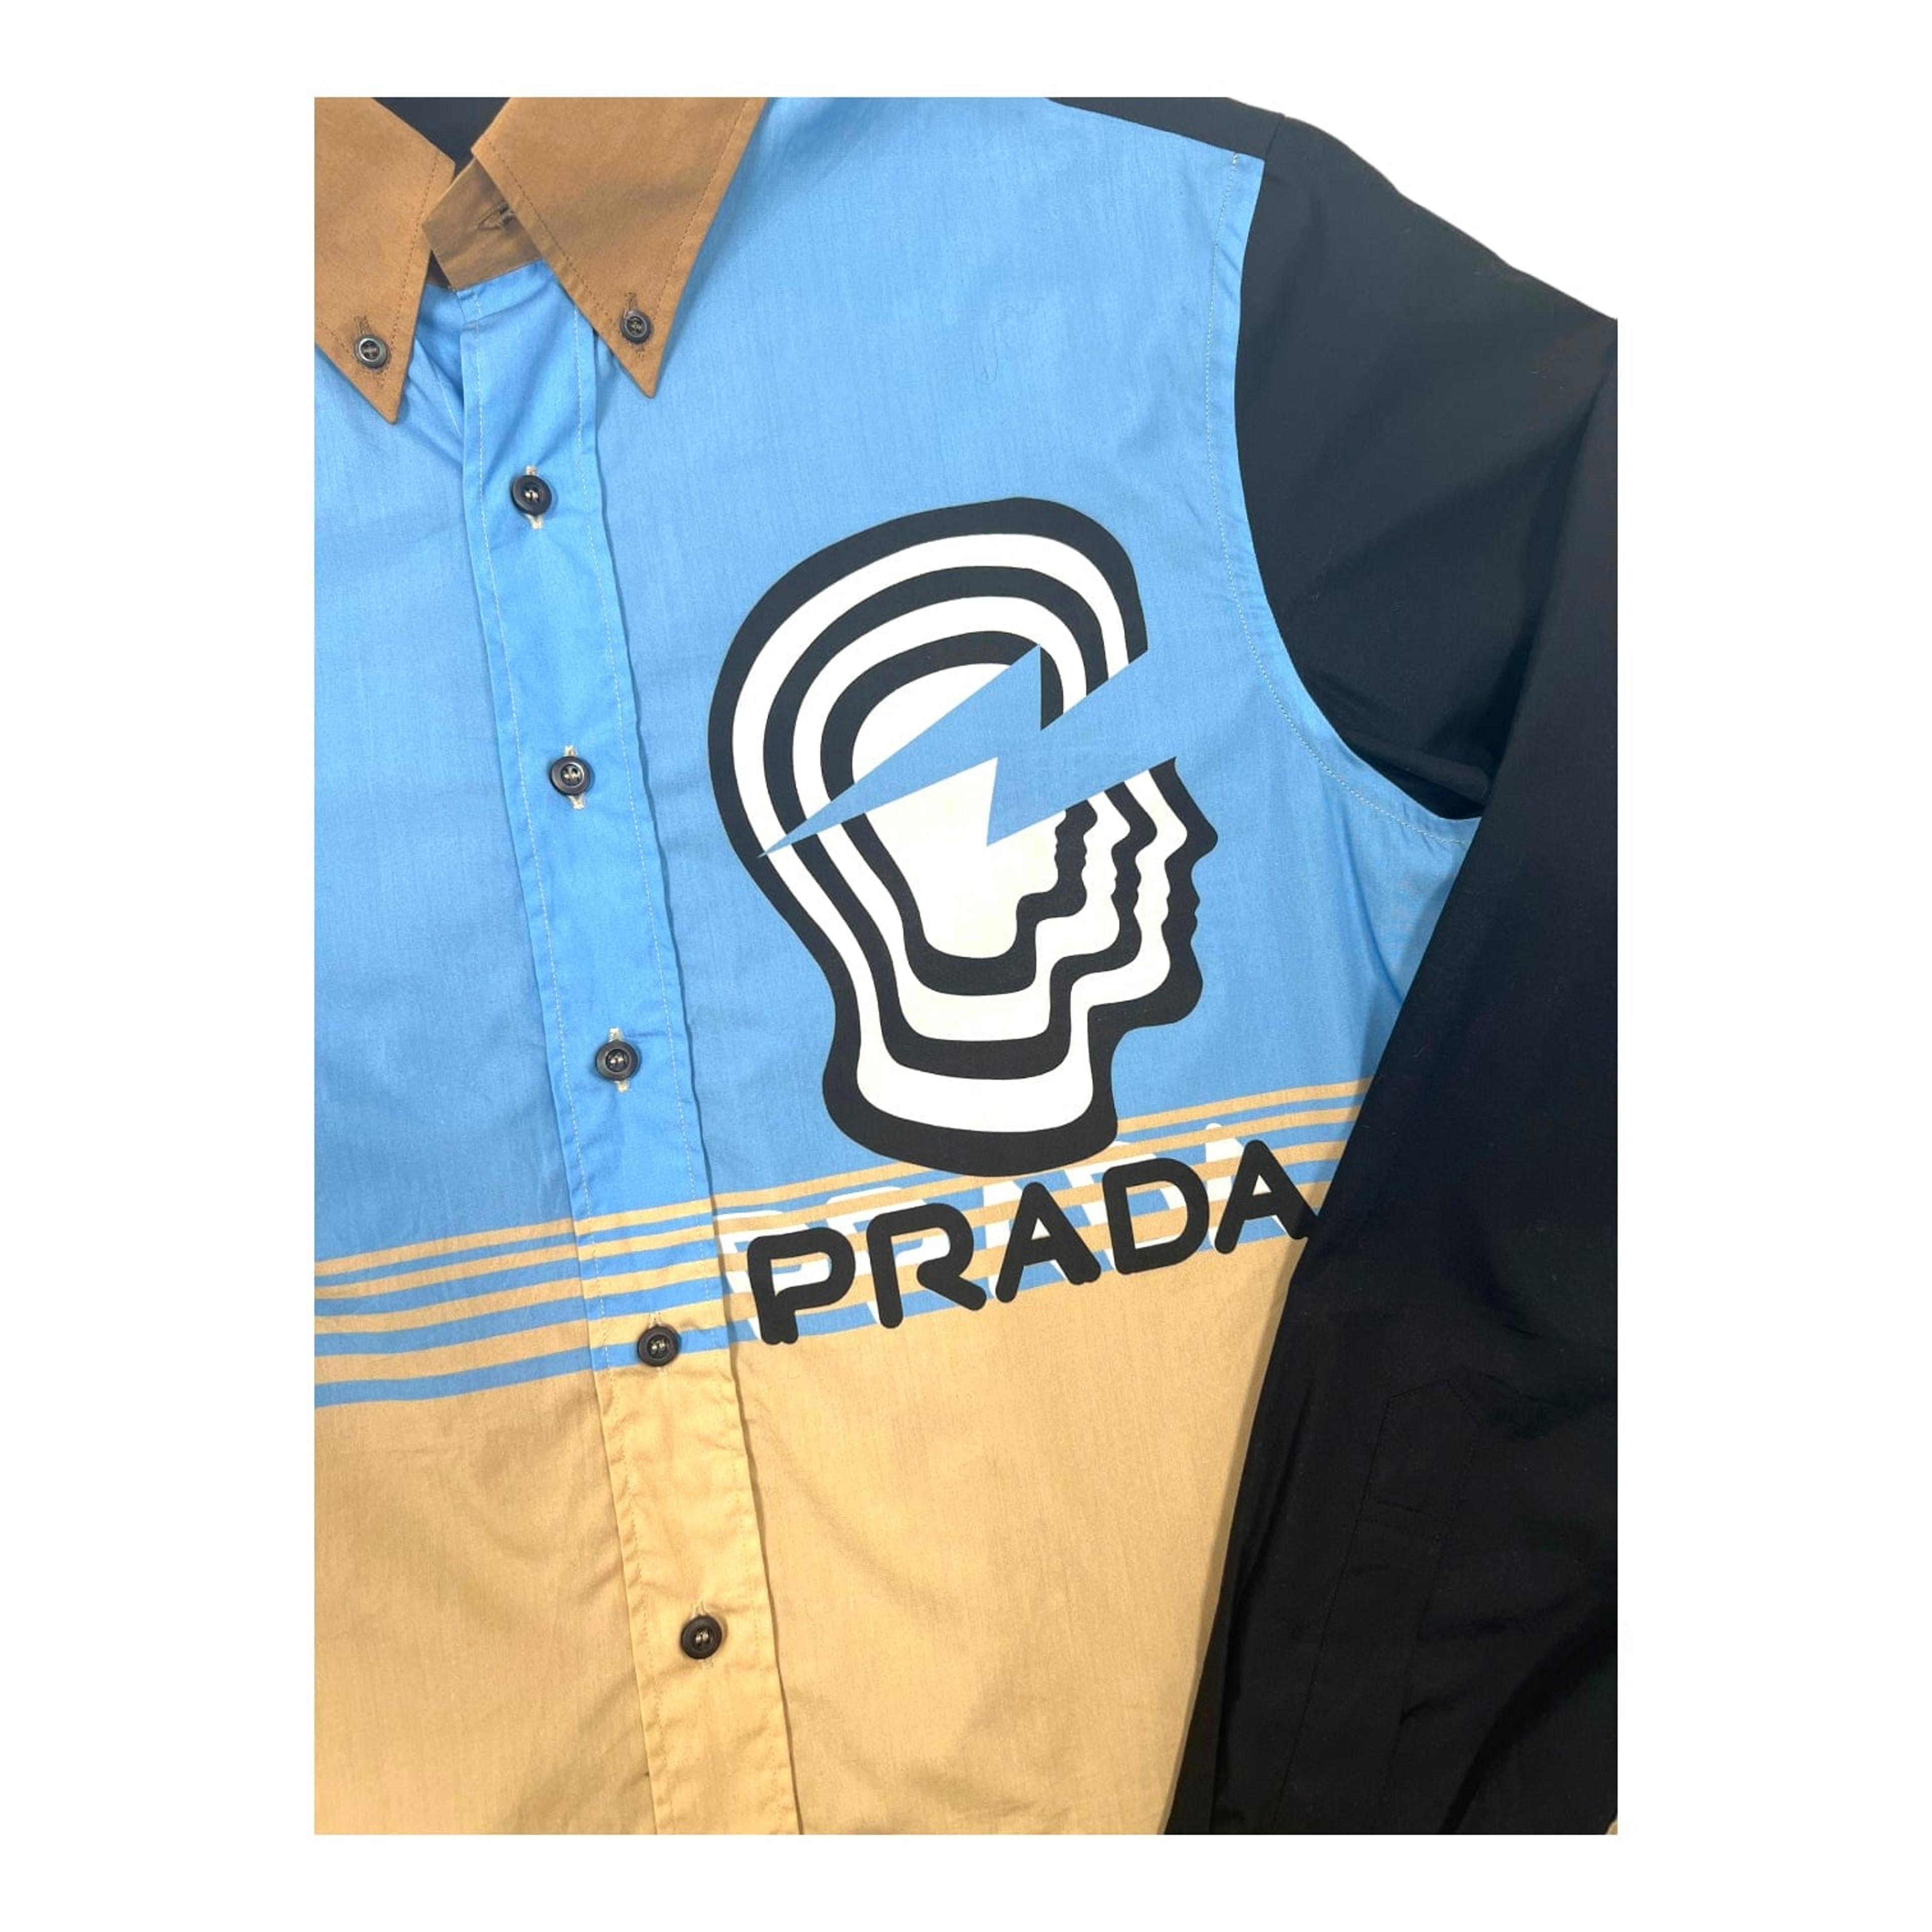 Alternate View 2 of Prada Vertigo Colorblock Button Up Shirt Blue Pre-Owned